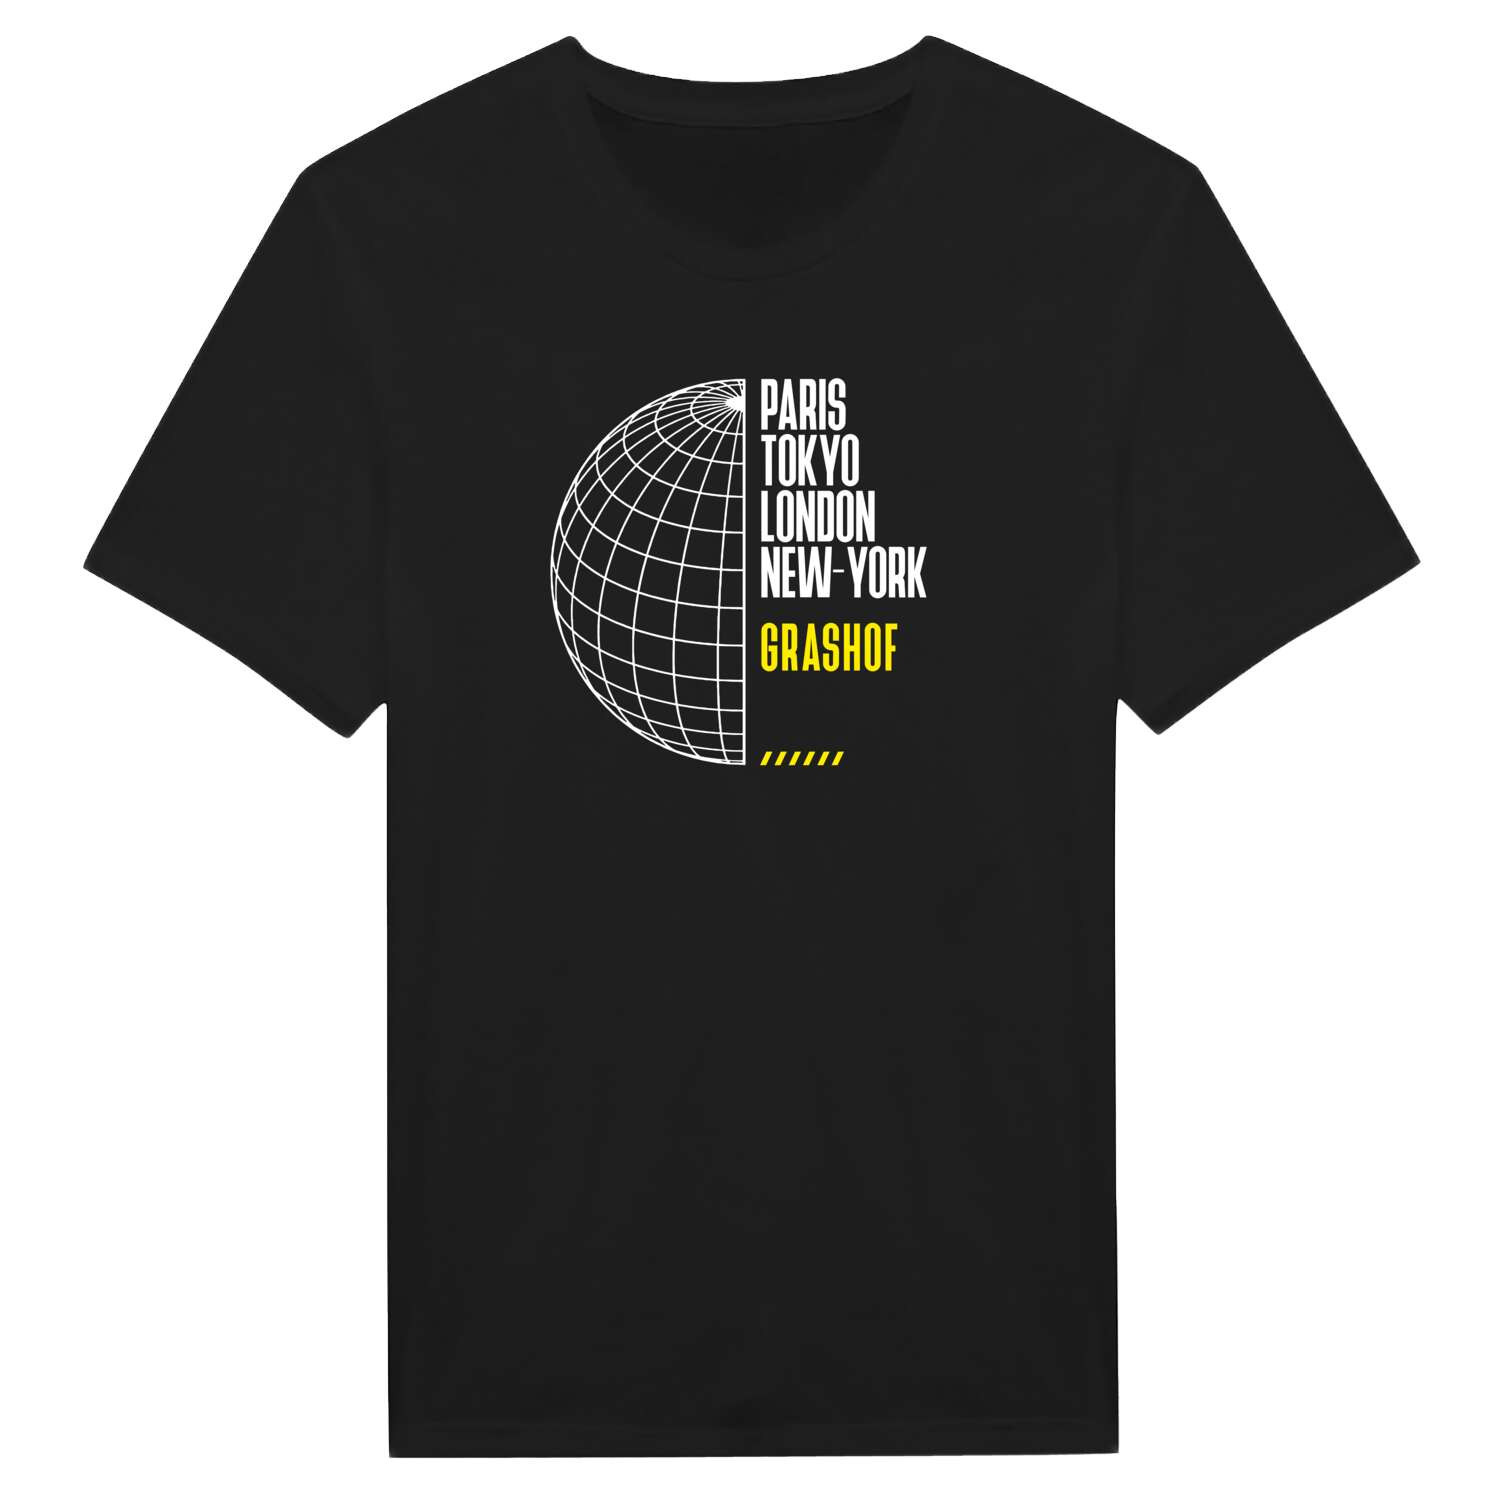 Grashof T-Shirt »Paris Tokyo London«